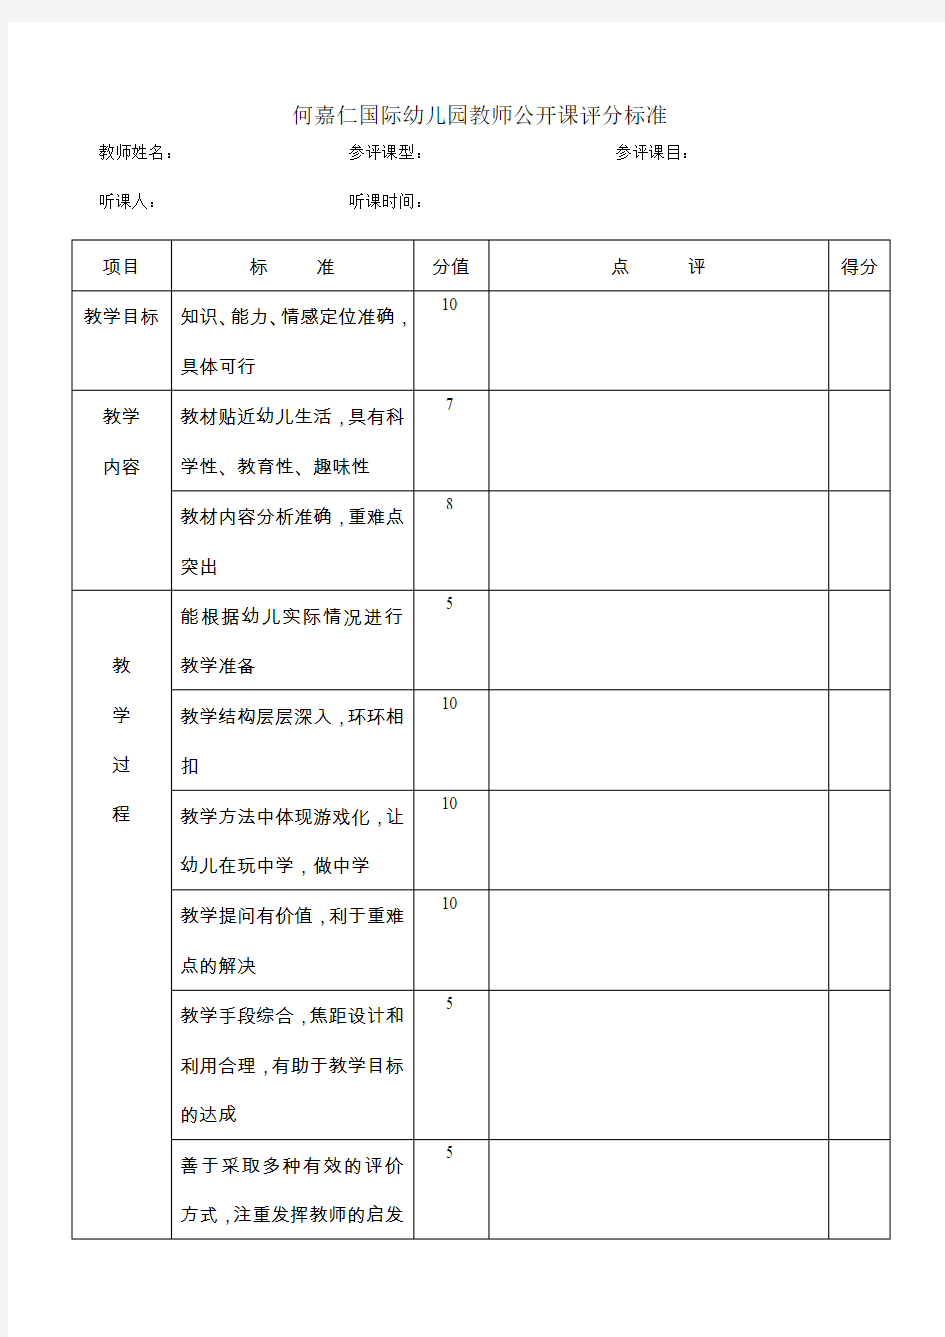 何嘉仁国际幼儿园教师公开课评分标准